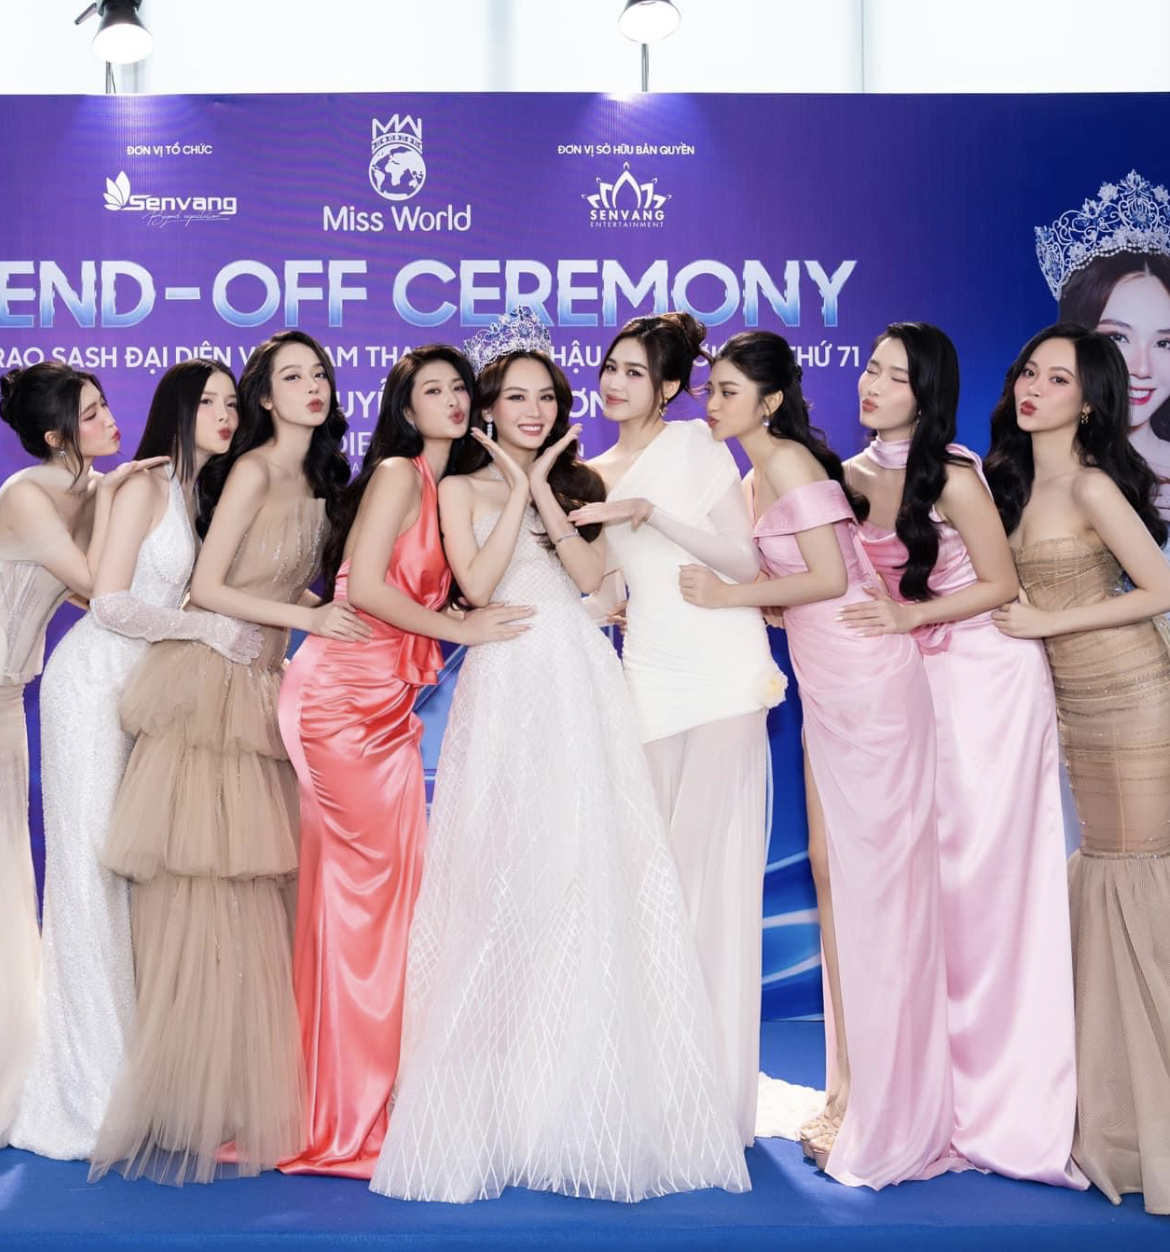 Hoa hậu Mai Phương công bố loạt váy áo tại Miss World, 1 nhân vật đặc biệt và dàn Hậu đình đám góp mặt- Ảnh 6.